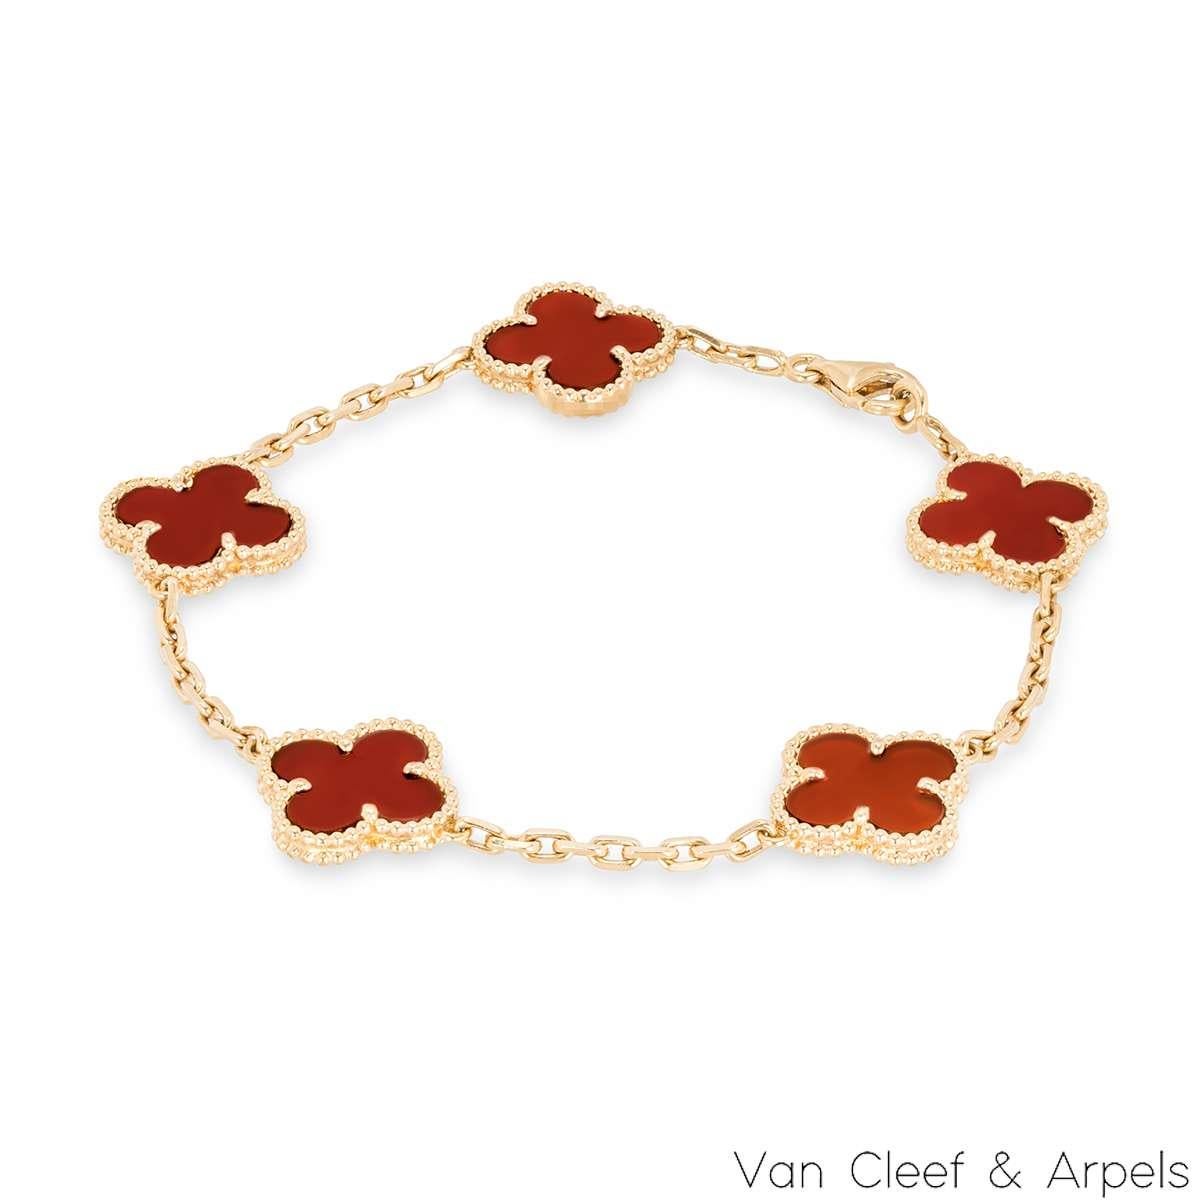 Ravissant bracelet en cornaline en or jaune 18 carats de la collection Vintage Alhambra de Van Cleef & Arpels. Le bracelet présente 5 motifs de trèfle emblématiques, chacun serti d'un bord perlé et d'une incrustation de cornaline, disposés sur toute